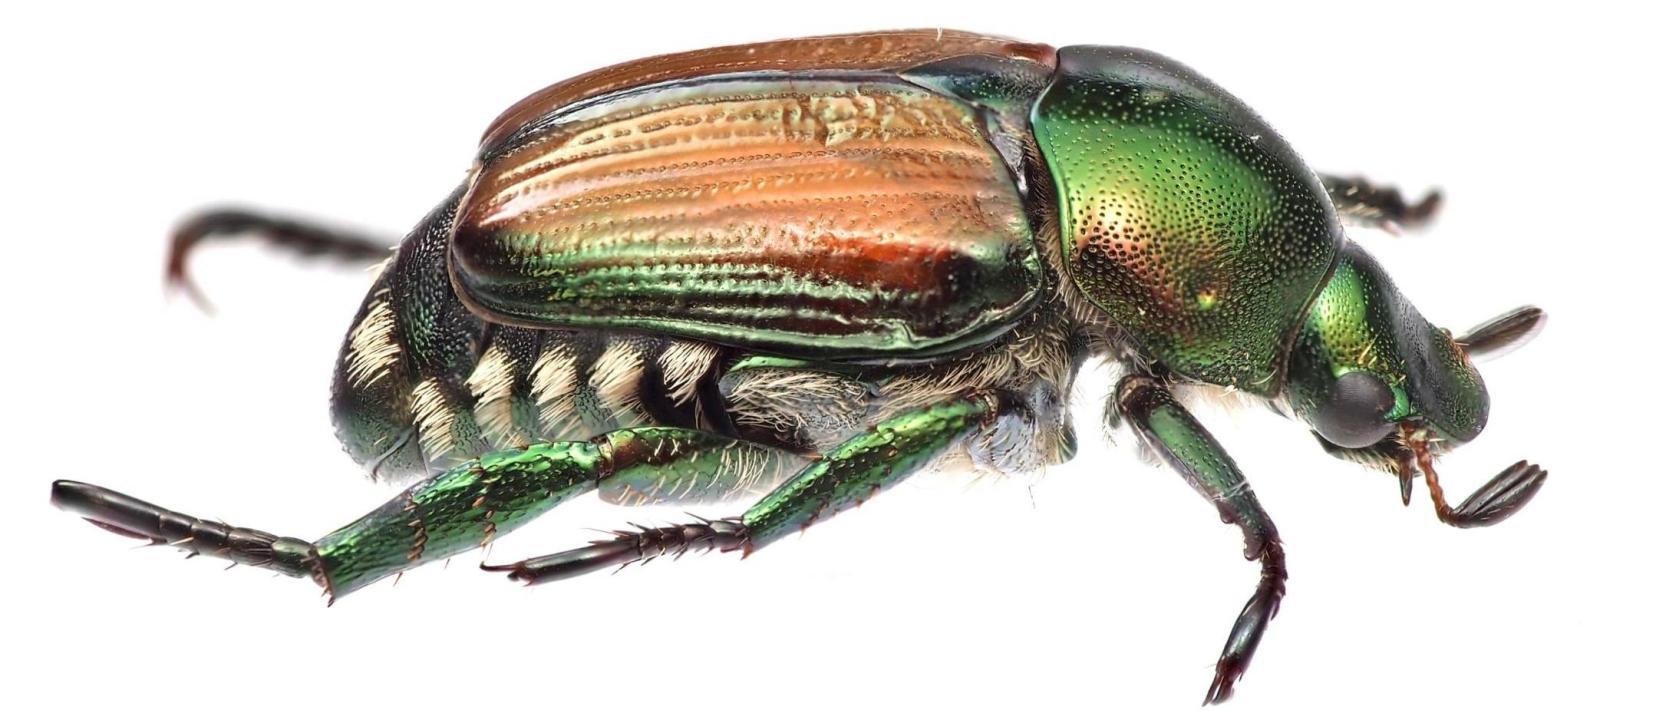 Grün-braun schimmernder Käfer. Gut sichtbar sind die fünf weissen Haarbüscheln an der Seite des Käfers - diese unterscheiden den Japankäfer vom Gartenlaub- oder Junikäfer.